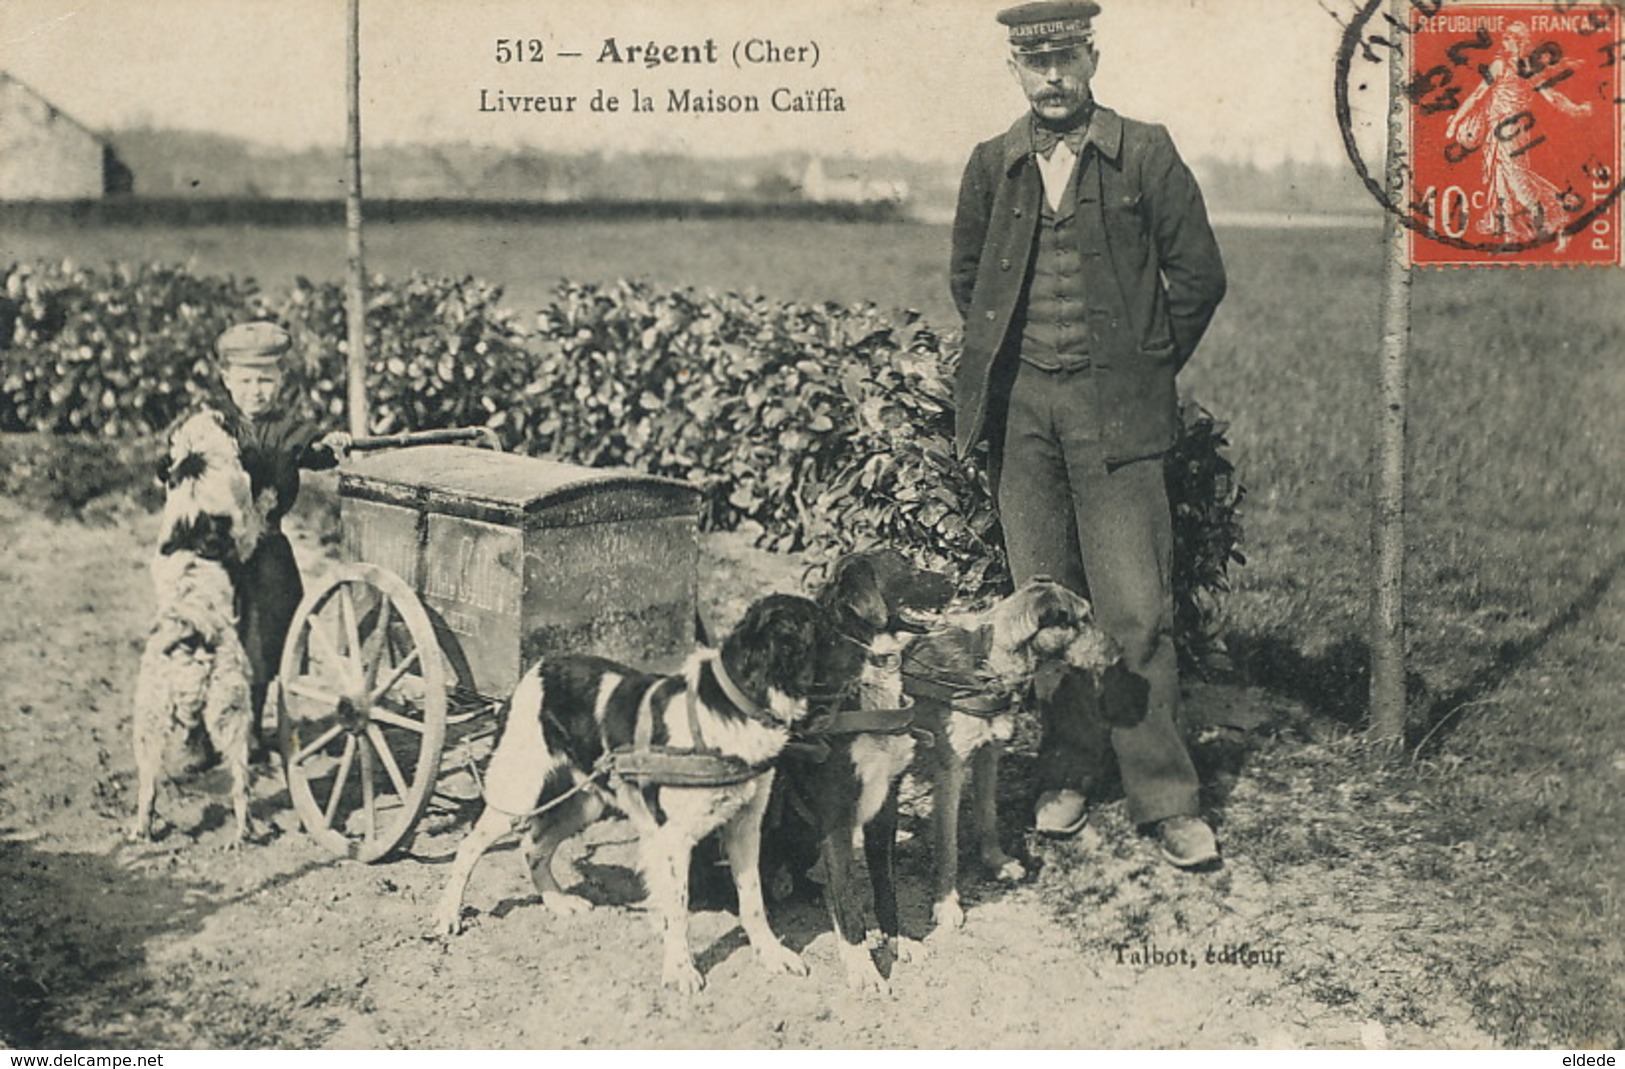 Argent Sur Sauldre Livreur ( Name Chocat ) Maison Planteur De Caiffa Michel Cahen. Attelage 3 Chiens. Dog Cart.Talbot - Judaisme